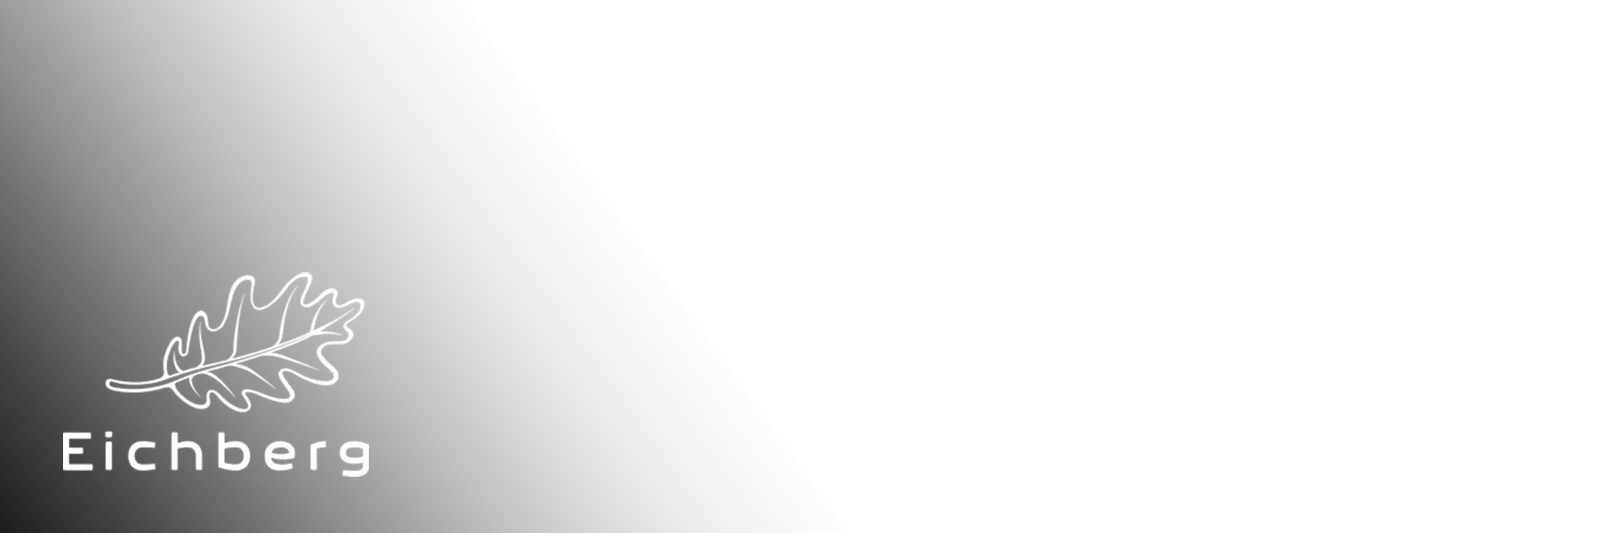 eichberg logo